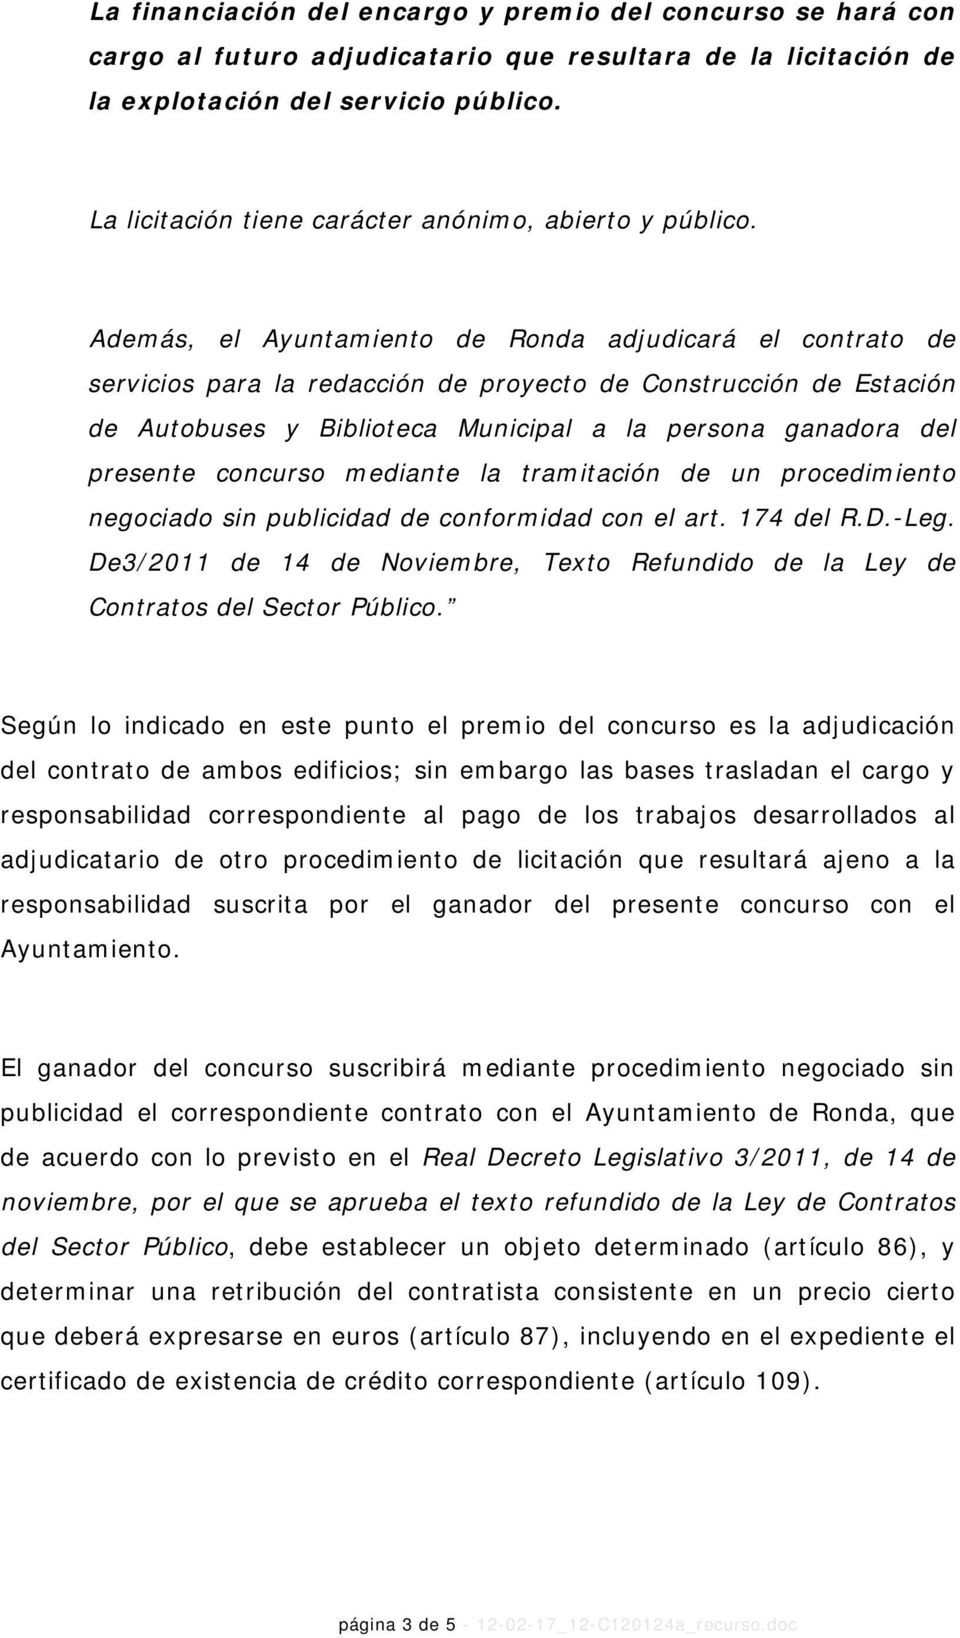 Además, el Ayuntamiento de Ronda adjudicará el contrato de servicios para la redacción de proyecto de Construcción de Estación de Autobuses y Biblioteca Municipal a la persona ganadora del presente